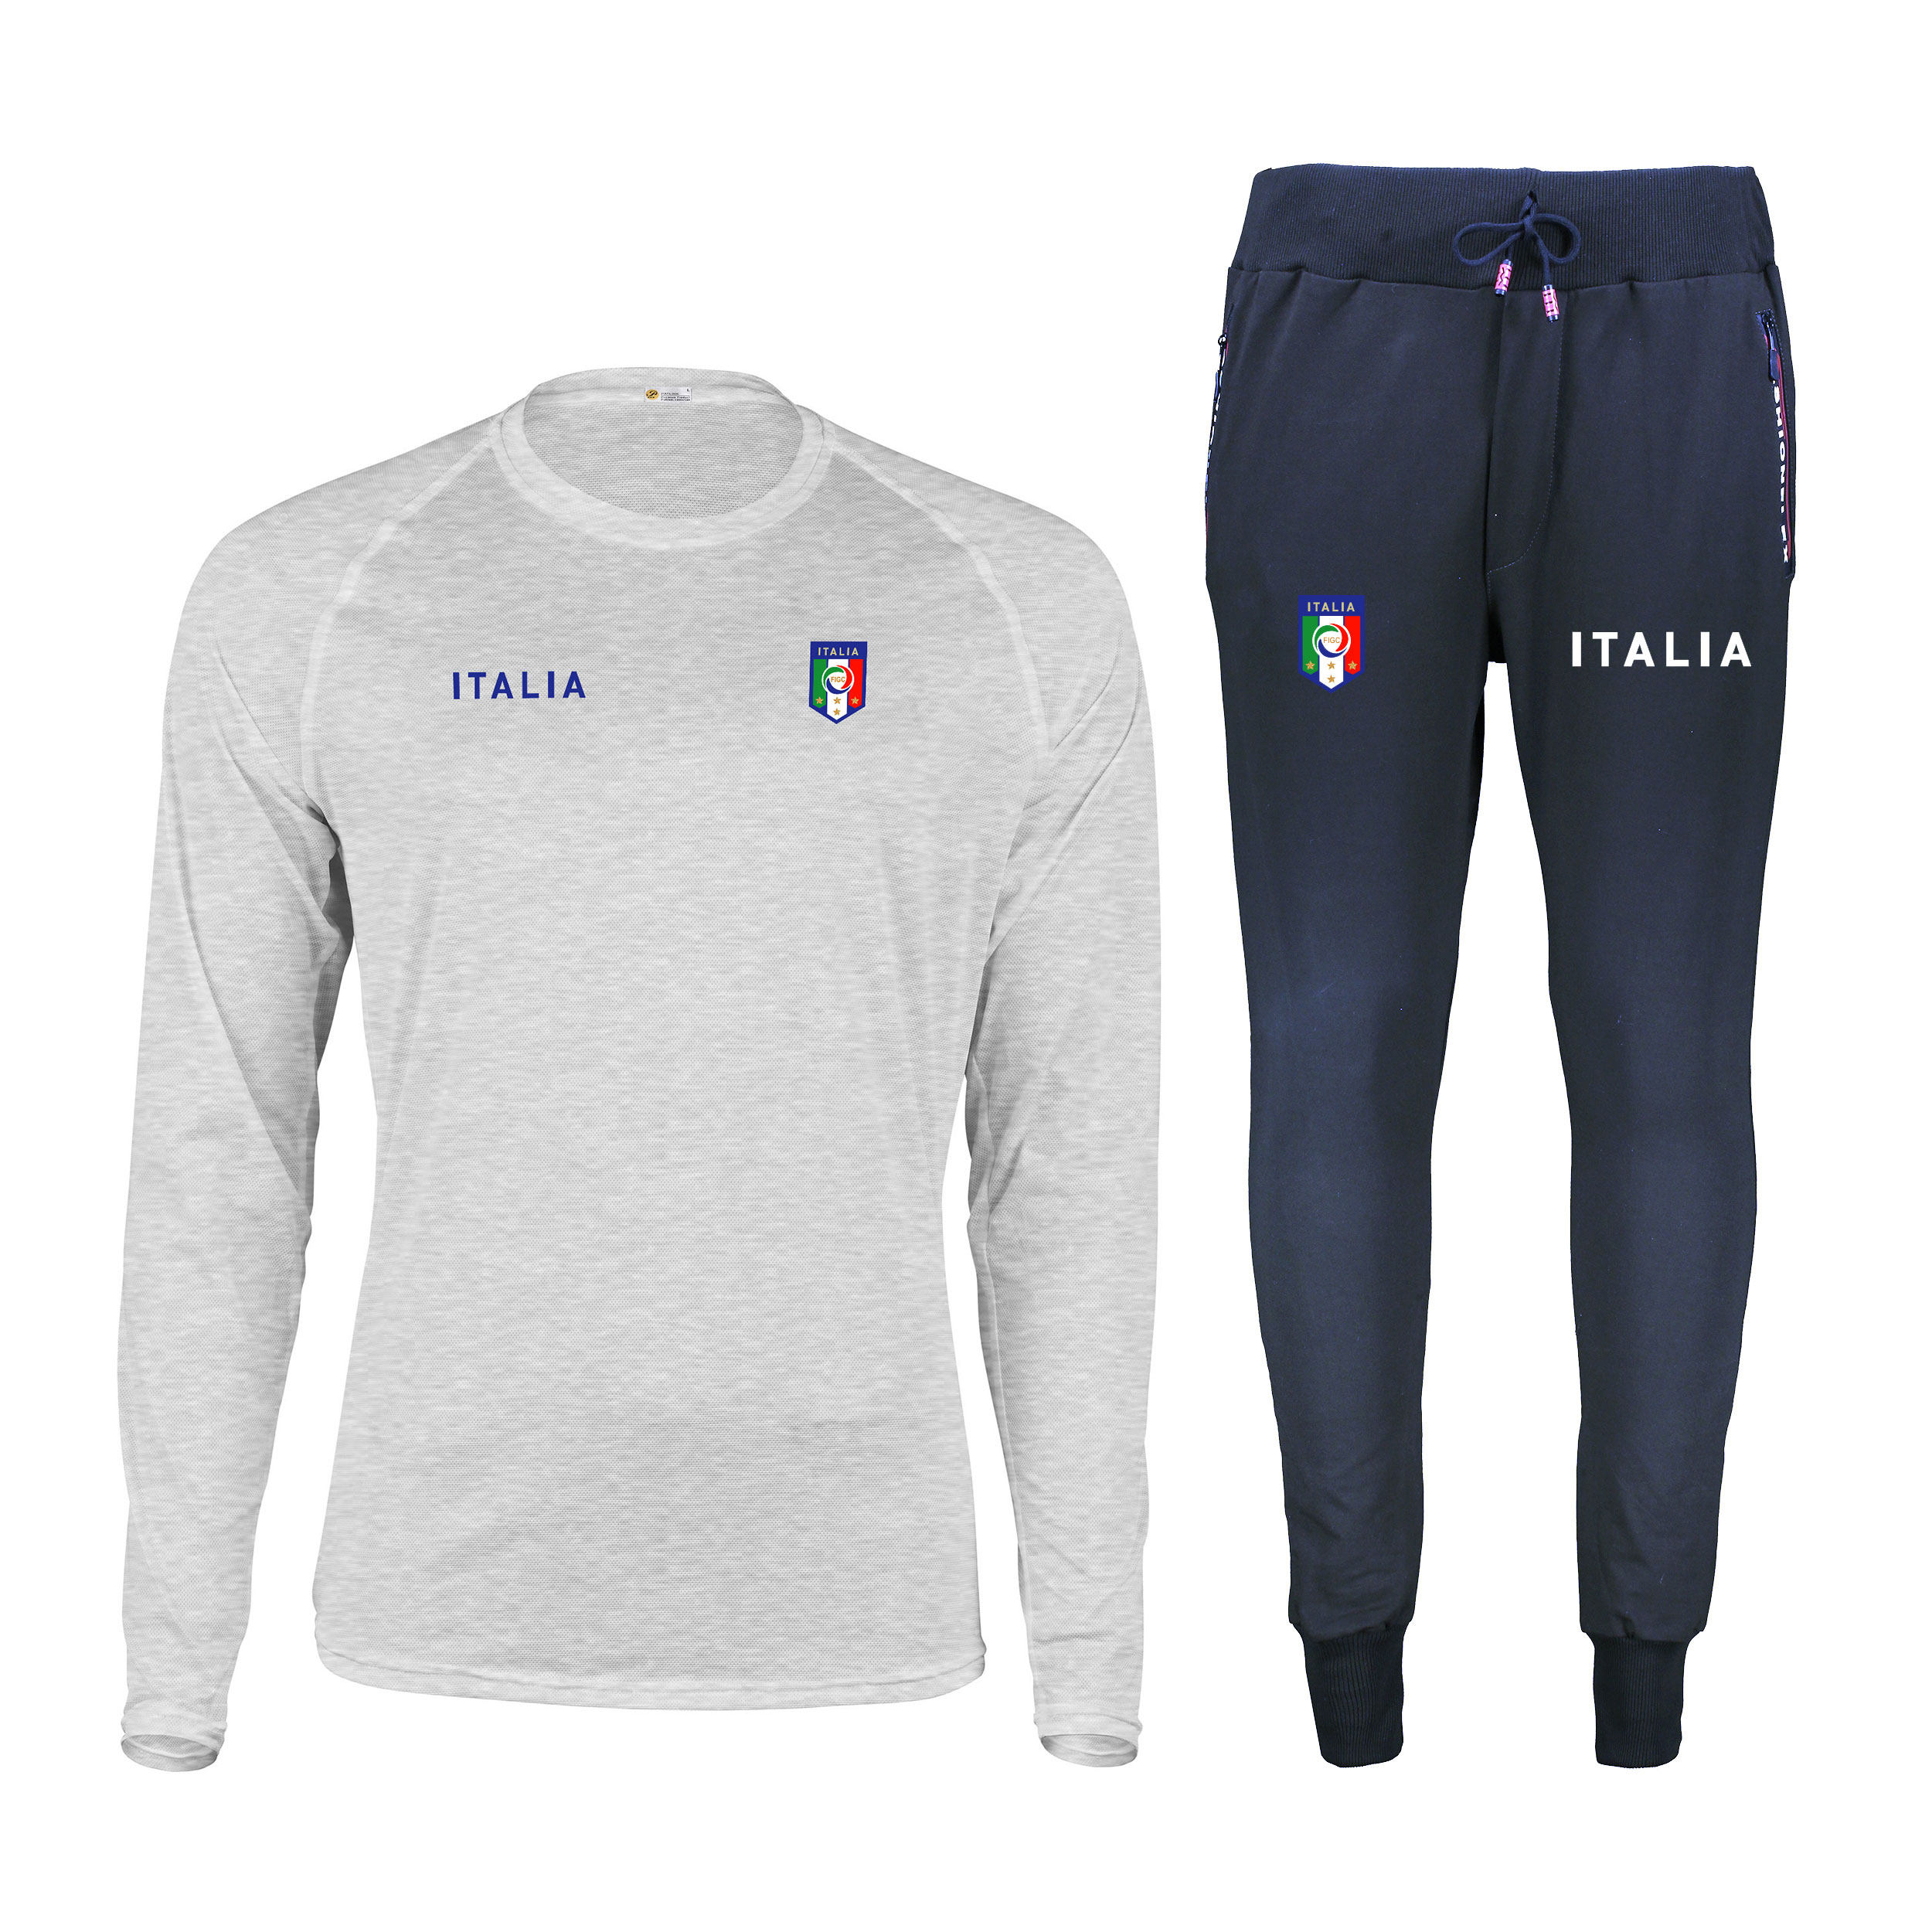 ست تی شرت و شلوار ورزشی مردانه پاتیلوک مدل ایتالیا کد 400116